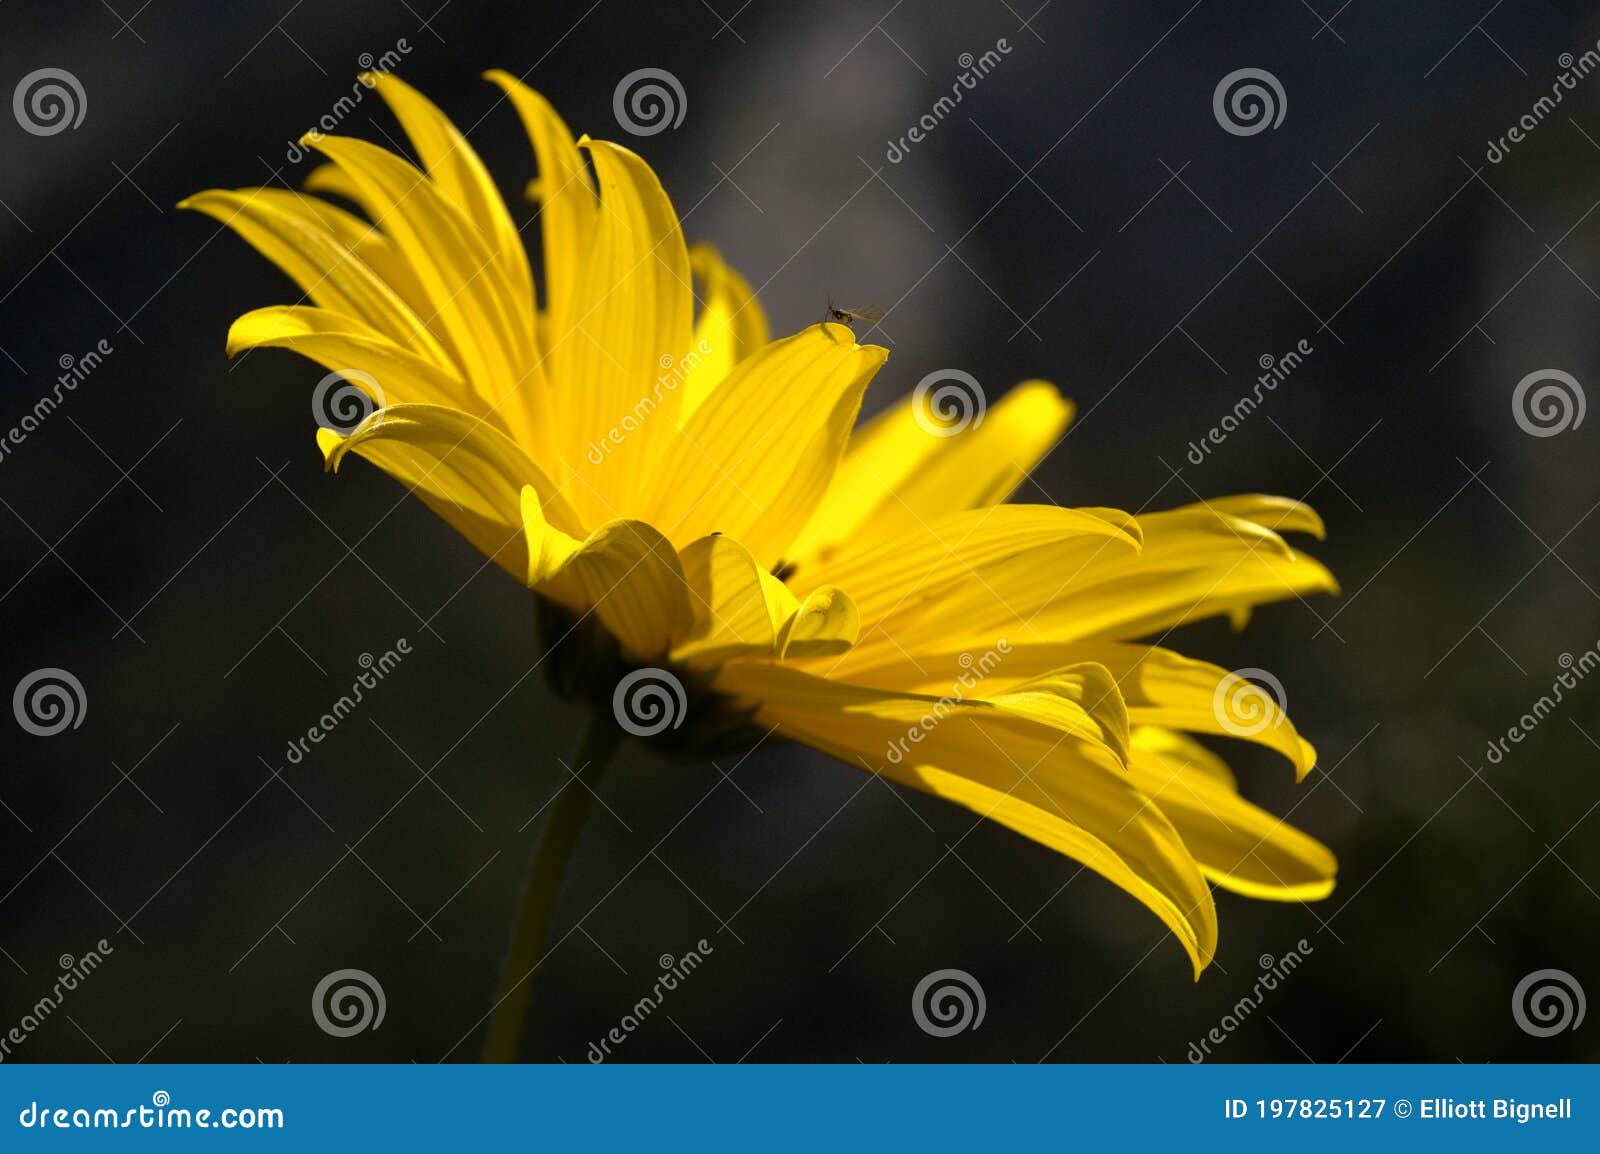 jerusalem artichoke flowering in swiss cottage garden in strong sunlight